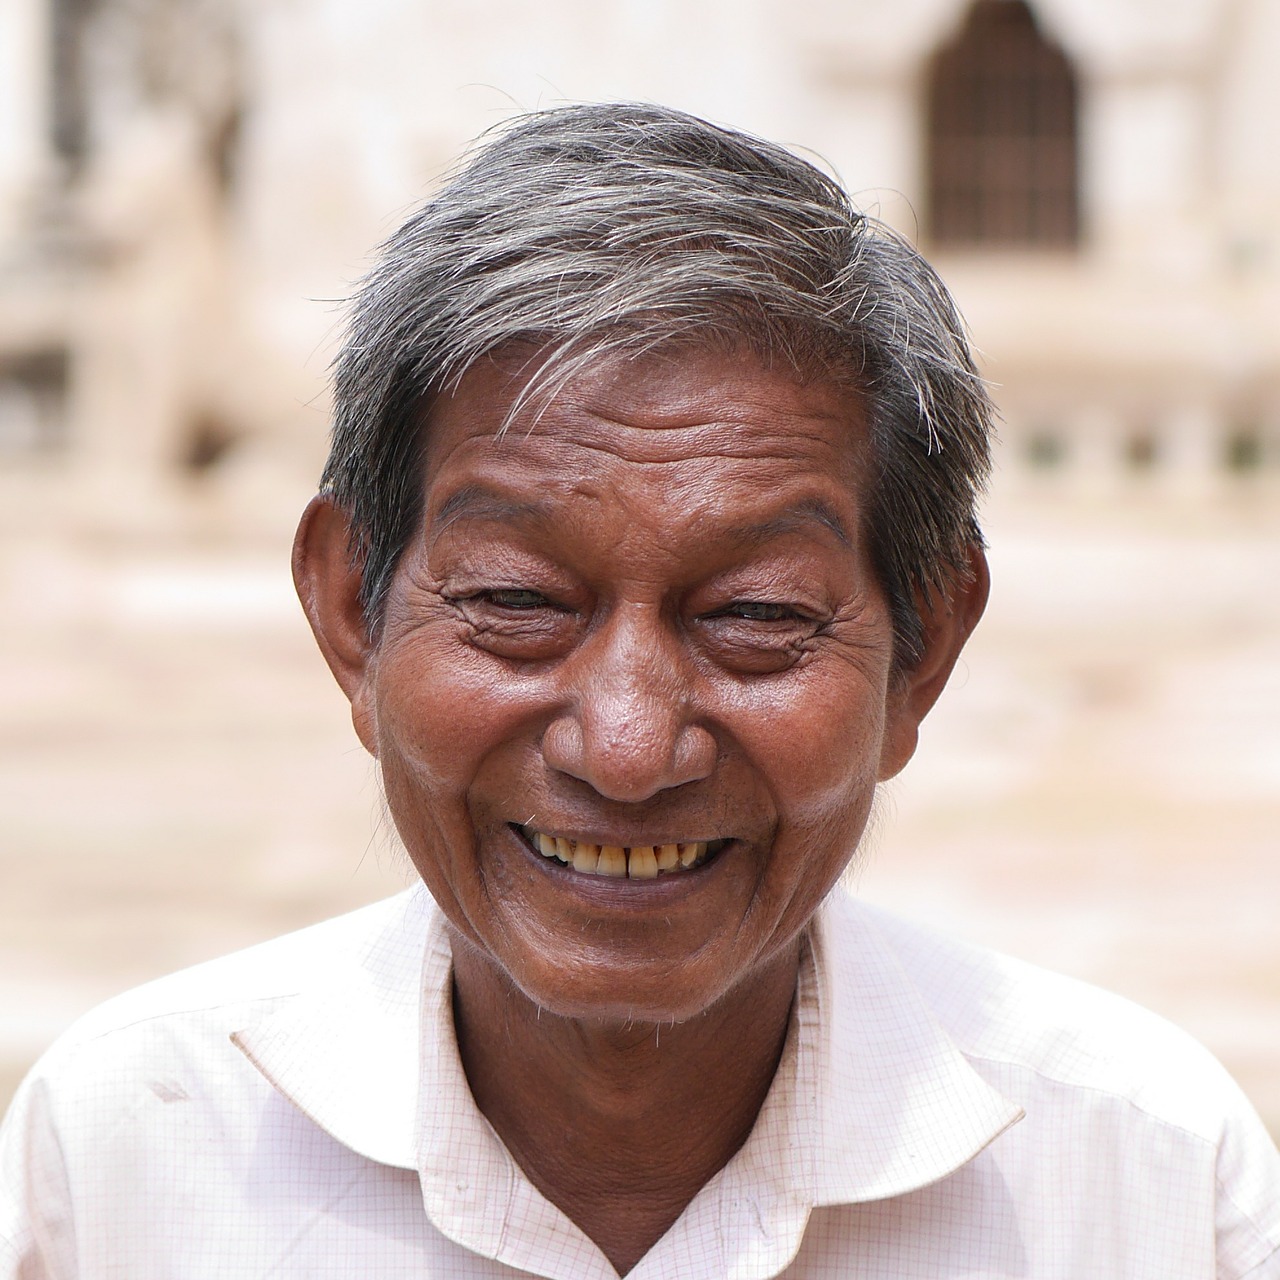 Vyras, Mianmaras, Laimingas, Patinas, Portretas, Šypsena, Linksmas, Žmogus, Traukiamas, Burma